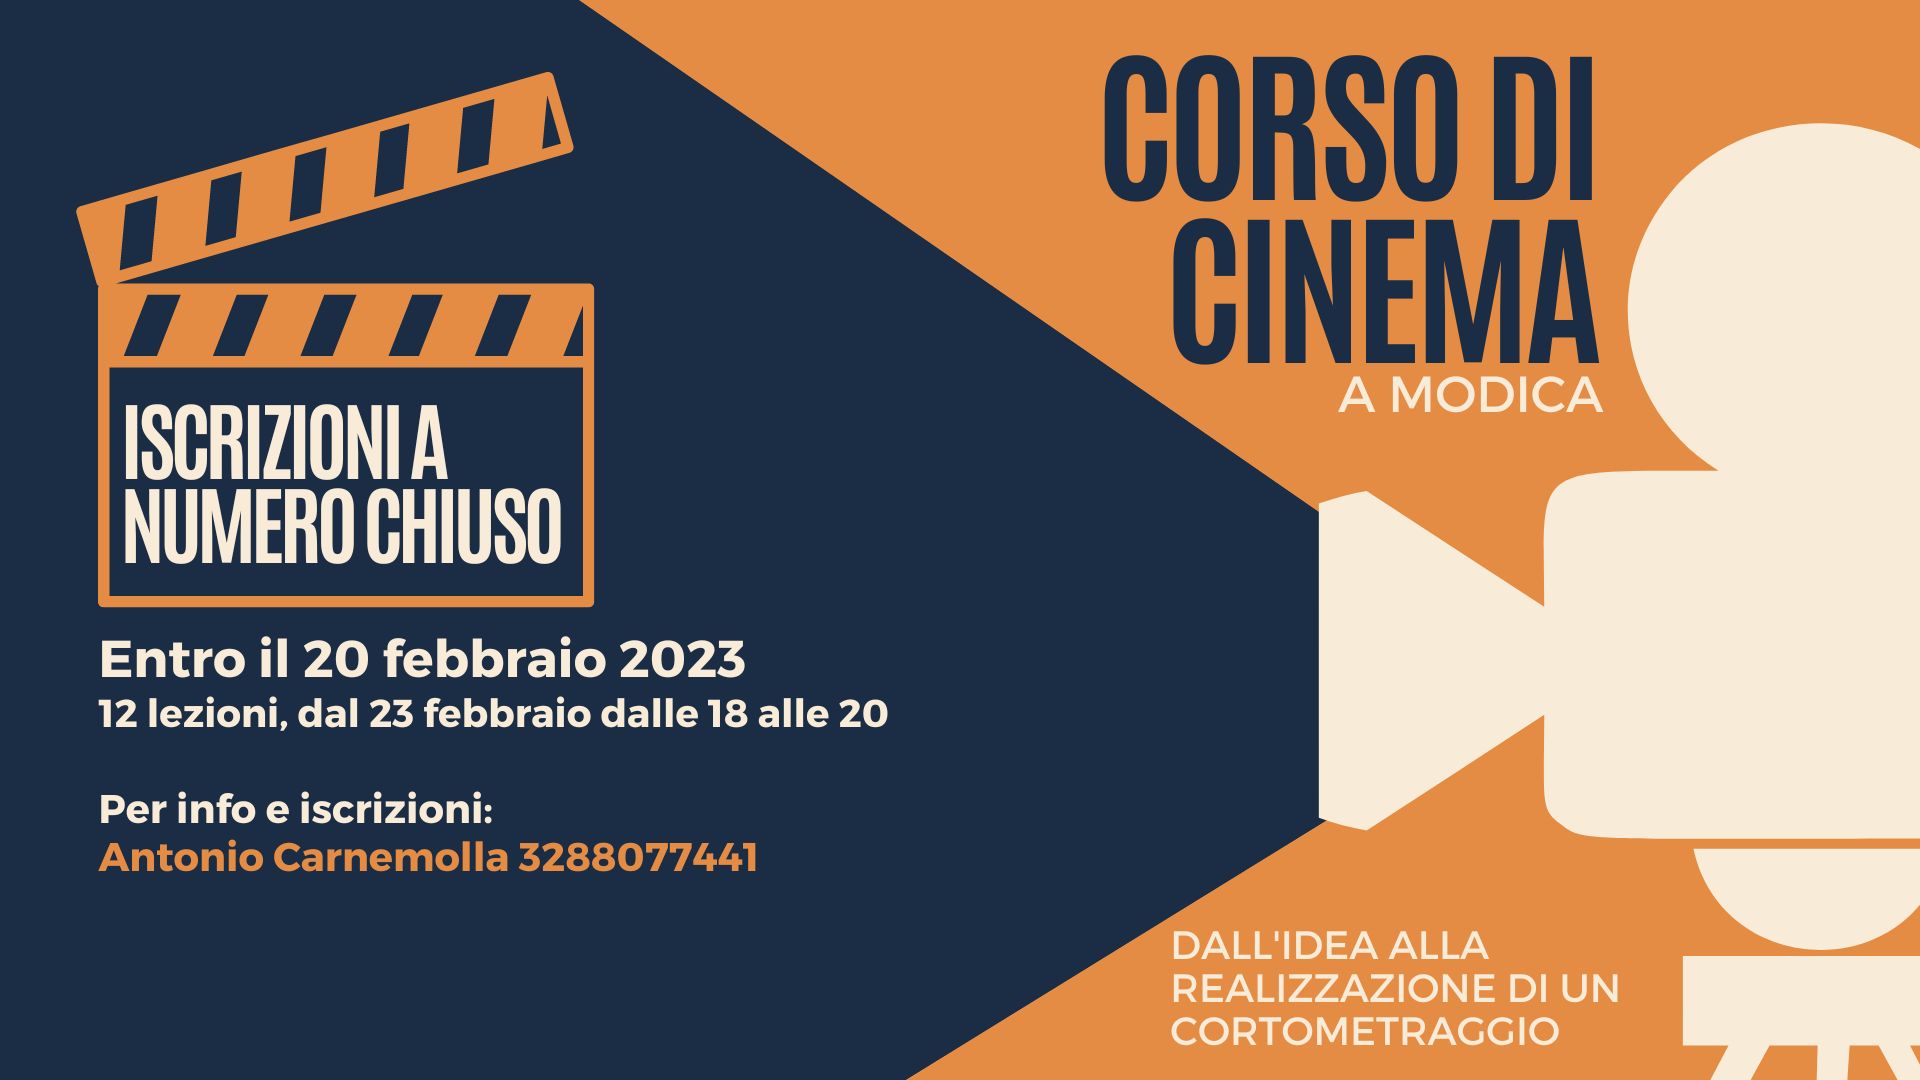 Corso di Cinema a Modica condotto da Antonio Carnemolla